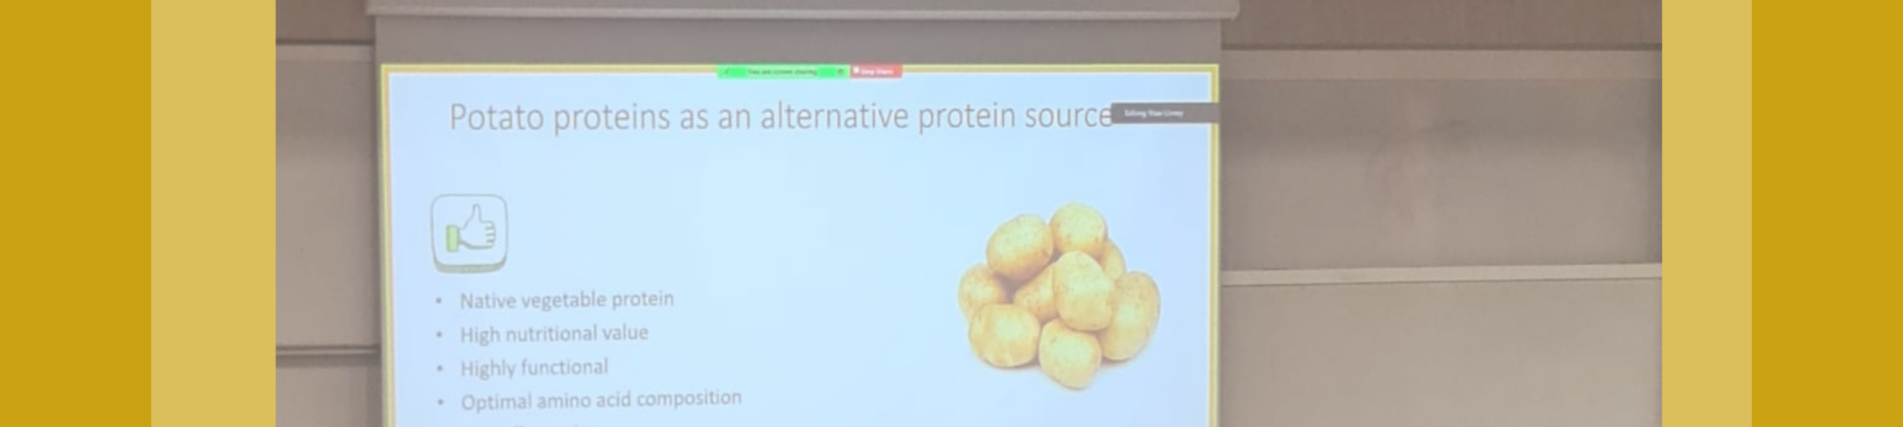 הפקולטה אירחה כנס בנושא חלבונים אלטרנטיביים